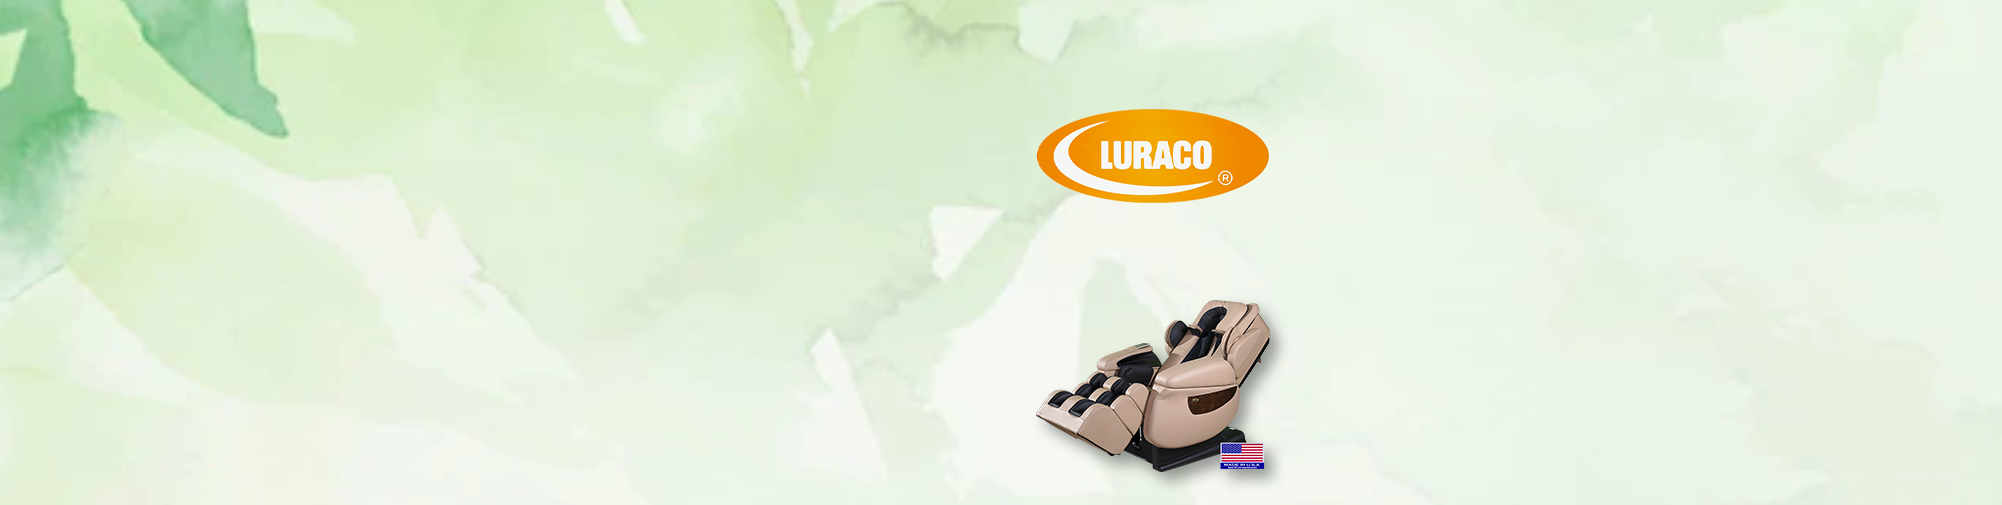 Luraco Technologies здравният фотьойл | Светът на масажните фотьойли